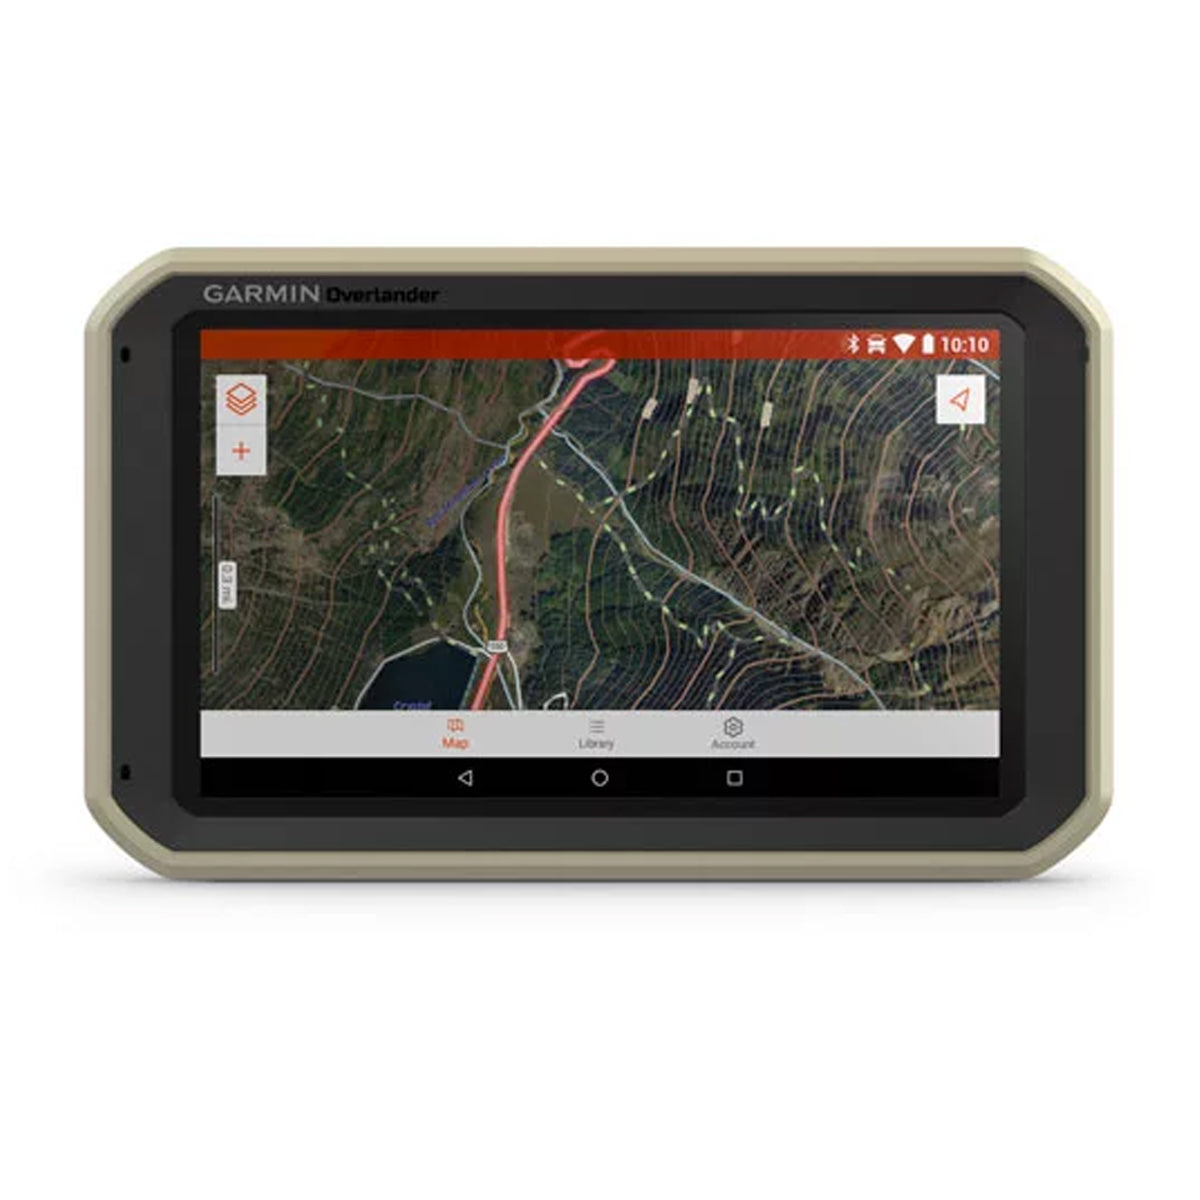 Garmin Overlander GPS in Garmin Overlander GPS by Garmin | Gear - goHUNT Shop by GOHUNT | Garmin - GOHUNT Shop